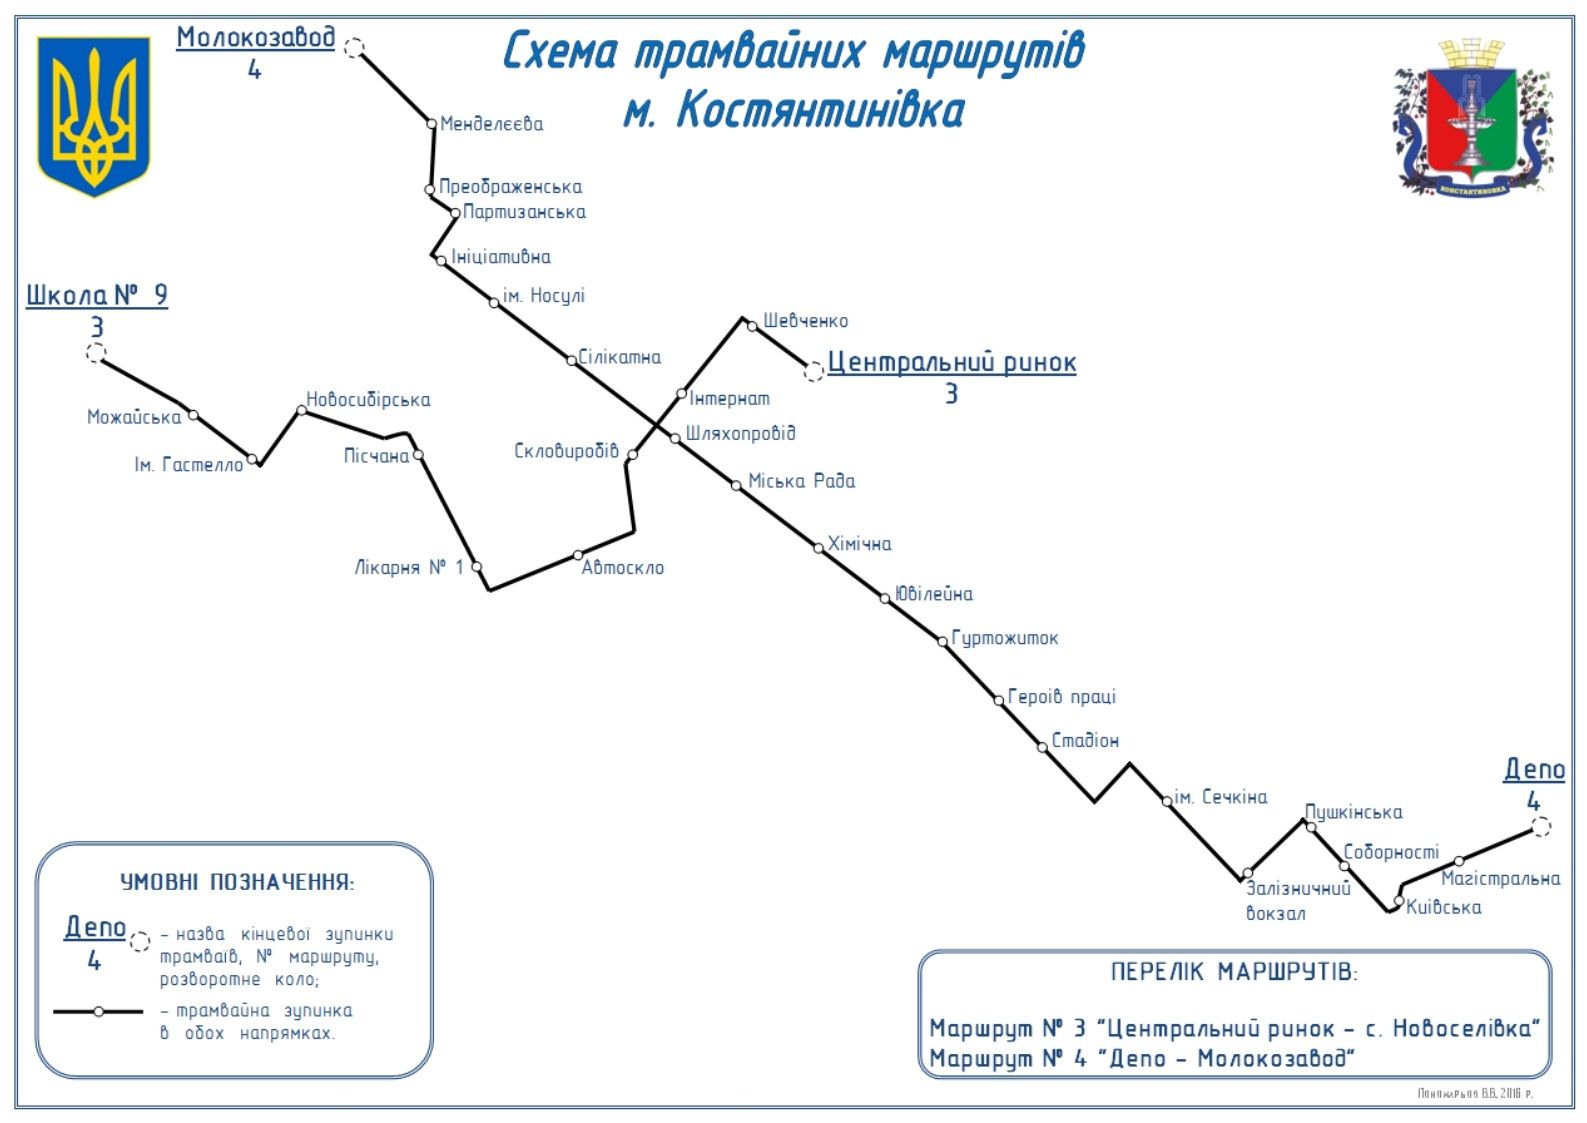 map of kostiantynivka